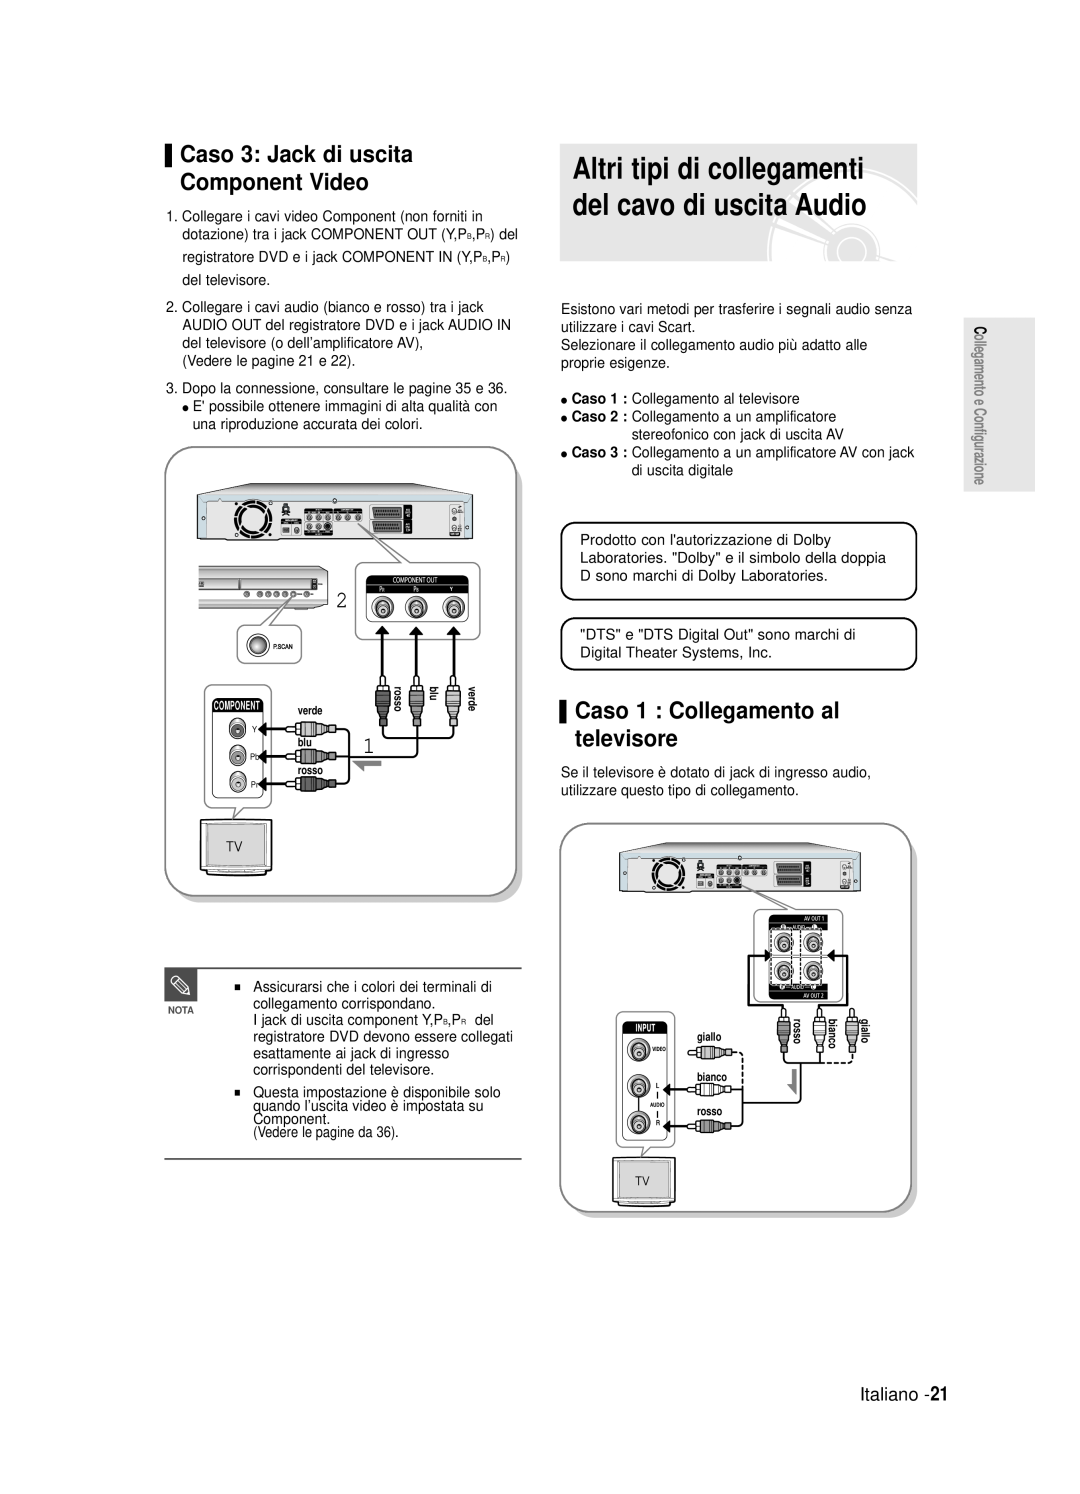 Samsung DVD-R120/AFS Altri tipi di collegamenti del cavo di uscita Audio, Caso 3 Jack di uscita Component Video, Italiano 